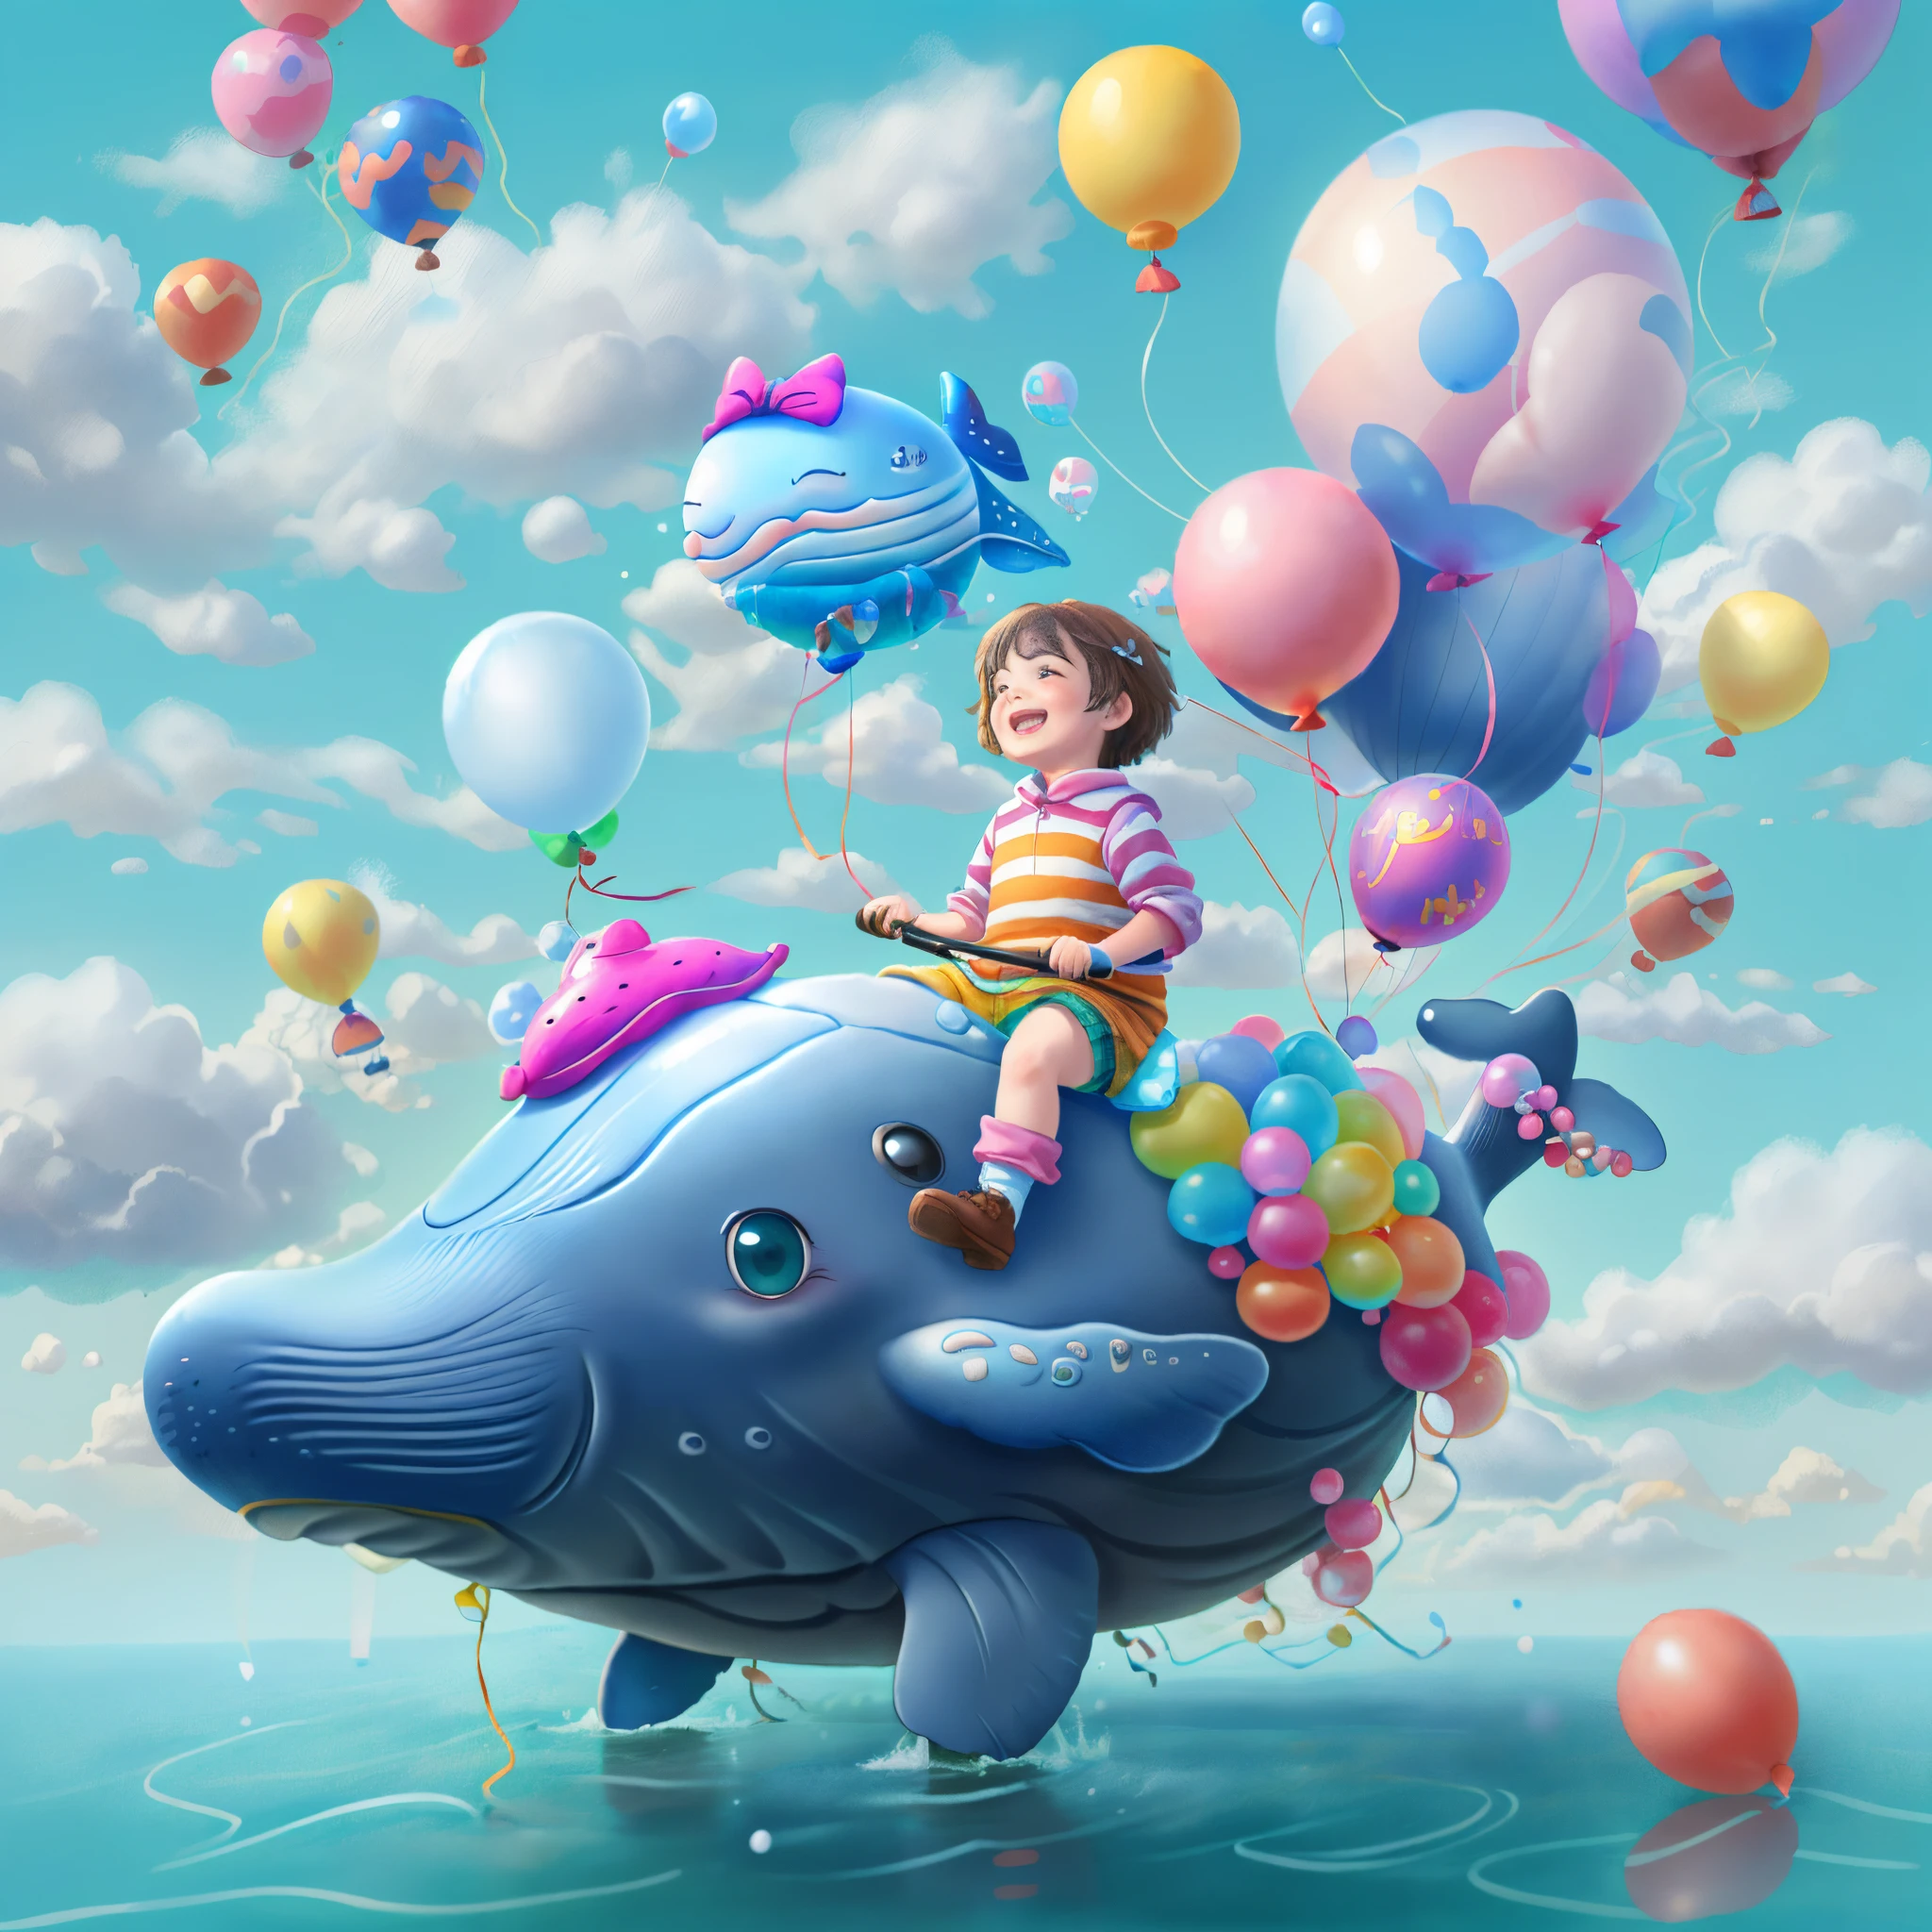 ((1  riding a whale made of 風船))，楽しそうに笑う，雲の中を飛ぶ，風船，青い空と白い雲，カメラを見つめる, かわいくて精巧なデジタルアート, 素敵なデジタル絵画, かわいい風船クジラ, 細部まで美しいアートワーク, かわいい3Dレンダリング, 非常に詳細なデジタル絵画, かわいくてカラフル, 愛らしい, 非常に詳細なデジタルアートワーク, 詳細かつカラフル